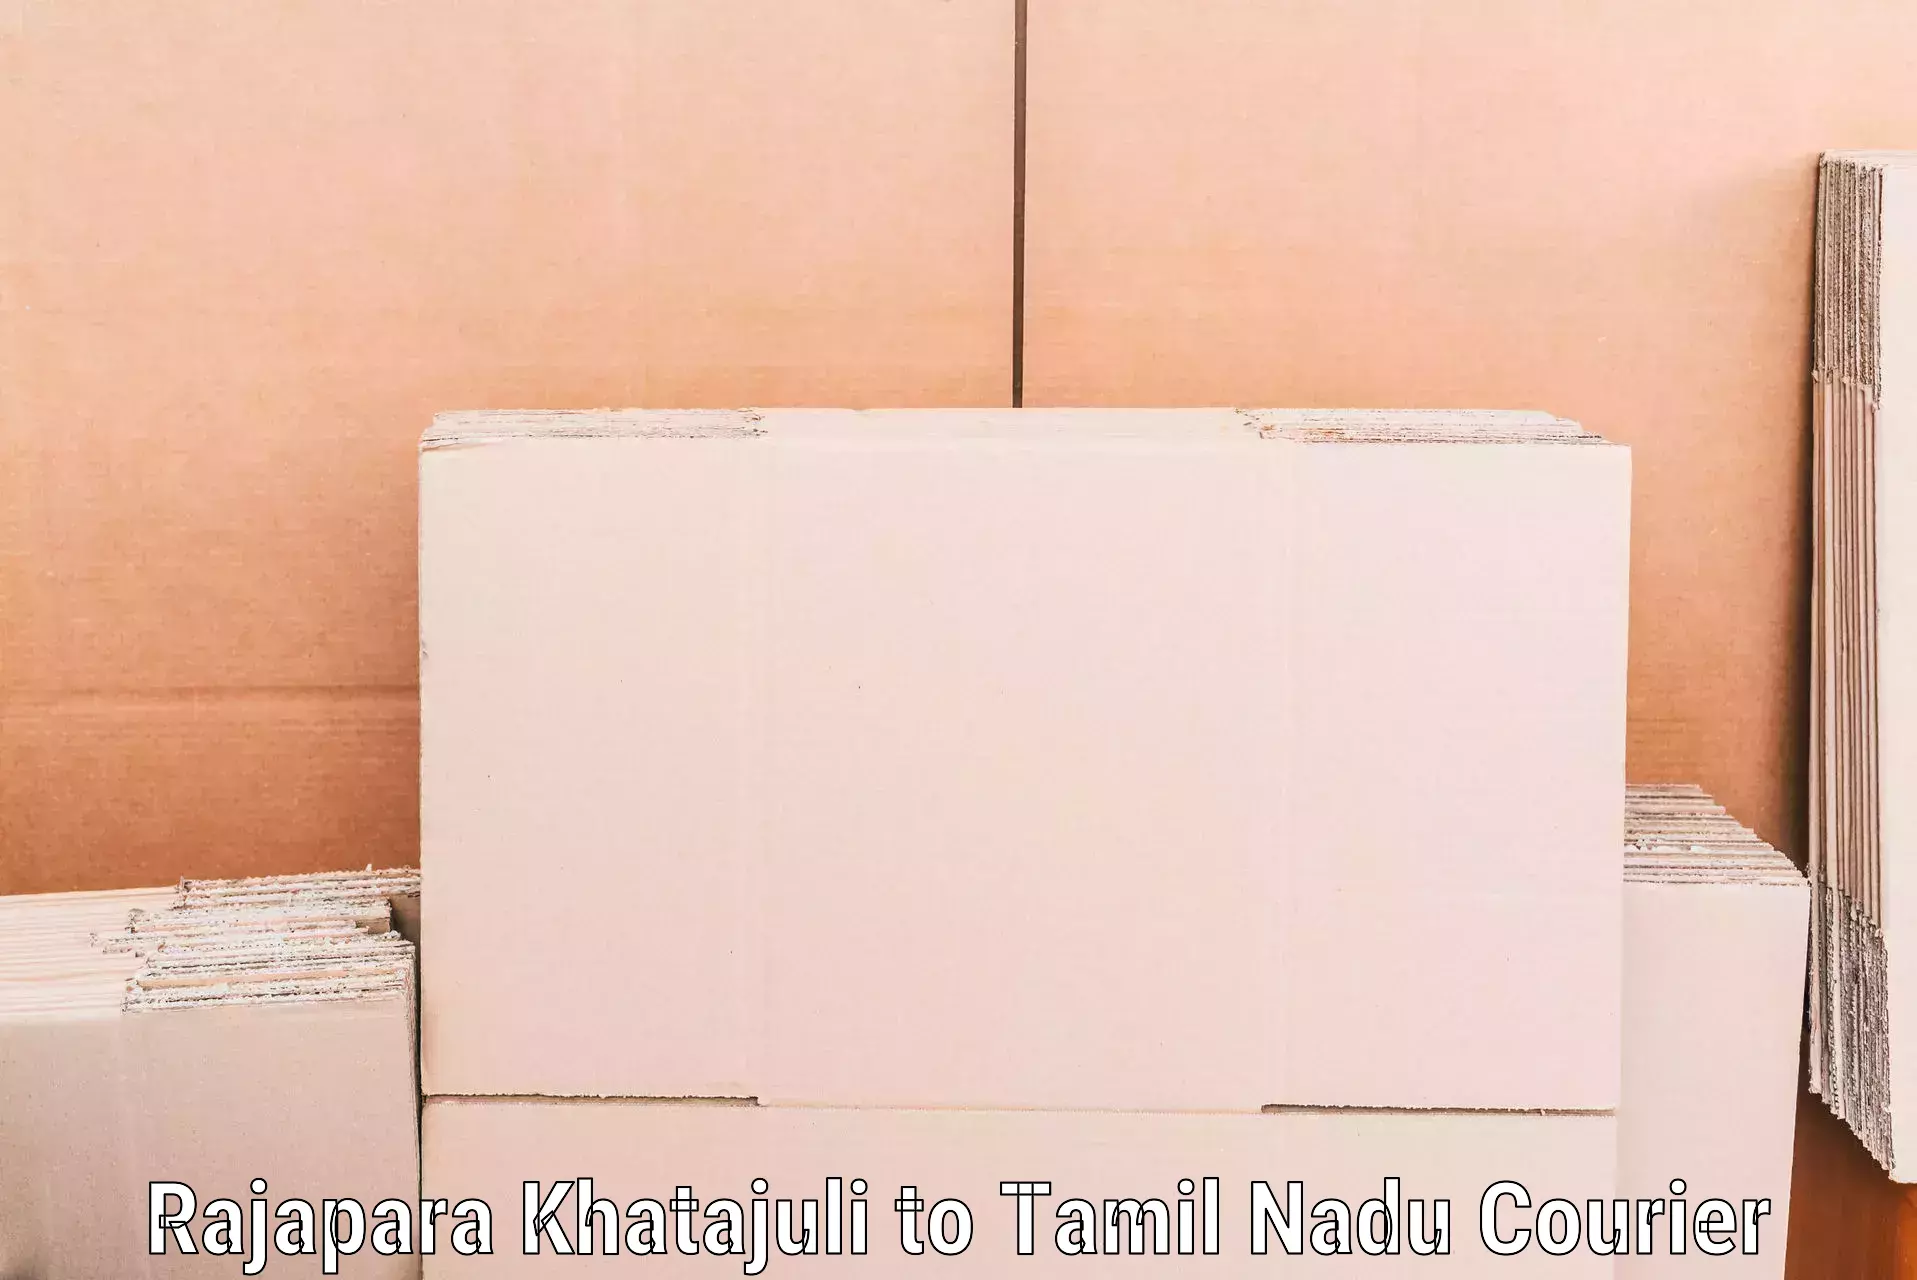 Furniture movers and packers Rajapara Khatajuli to Thiruvadanai